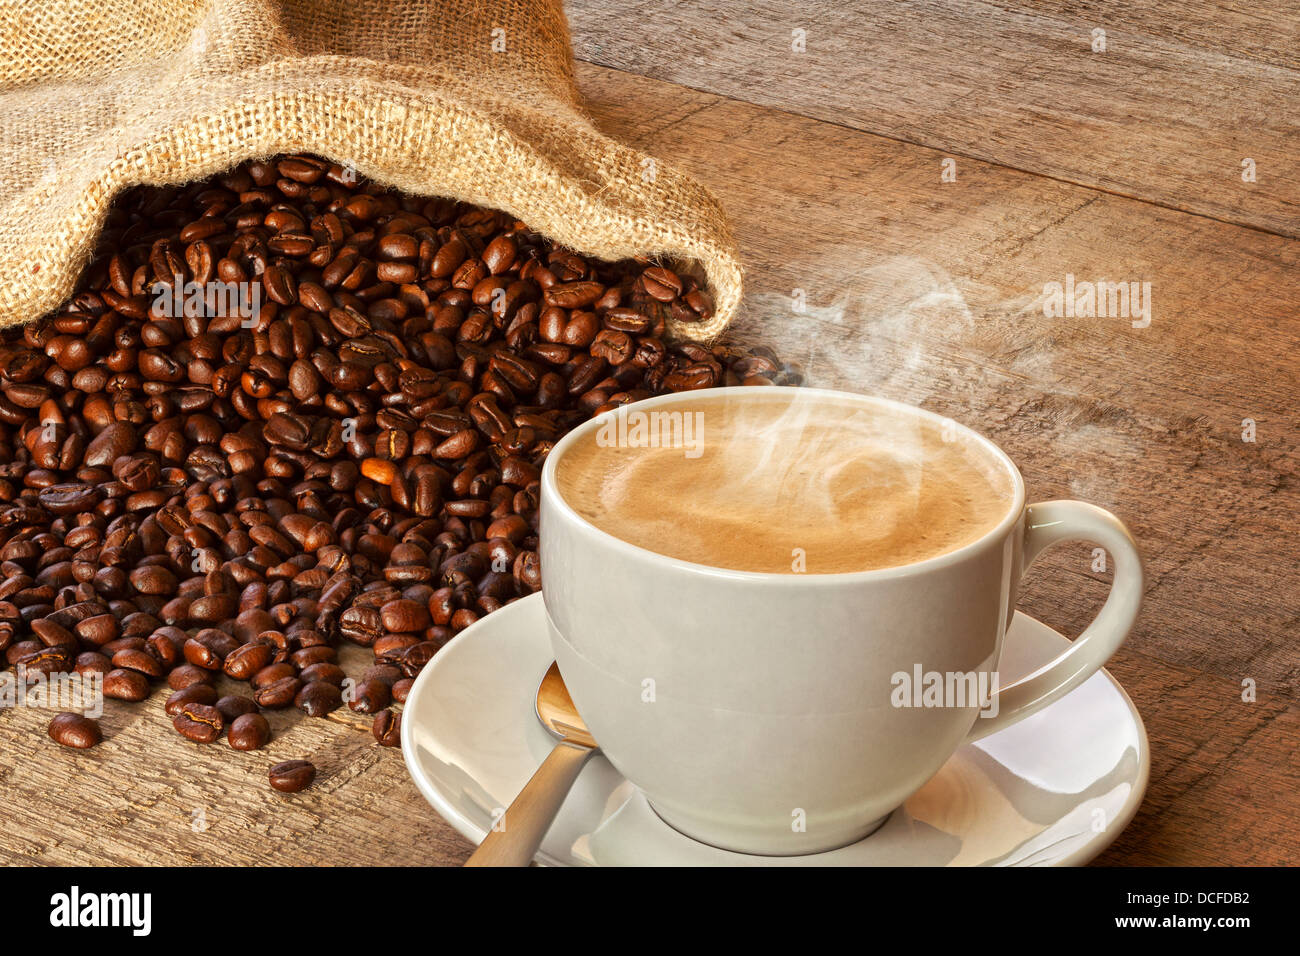 Kaffee und Sack von Kaffeebohnen - eine Tasse heißen dampfenden Espresso Kaffee auf einem rustikalen Brett Hintergrund, einen Sack Kaffee... Stockfoto